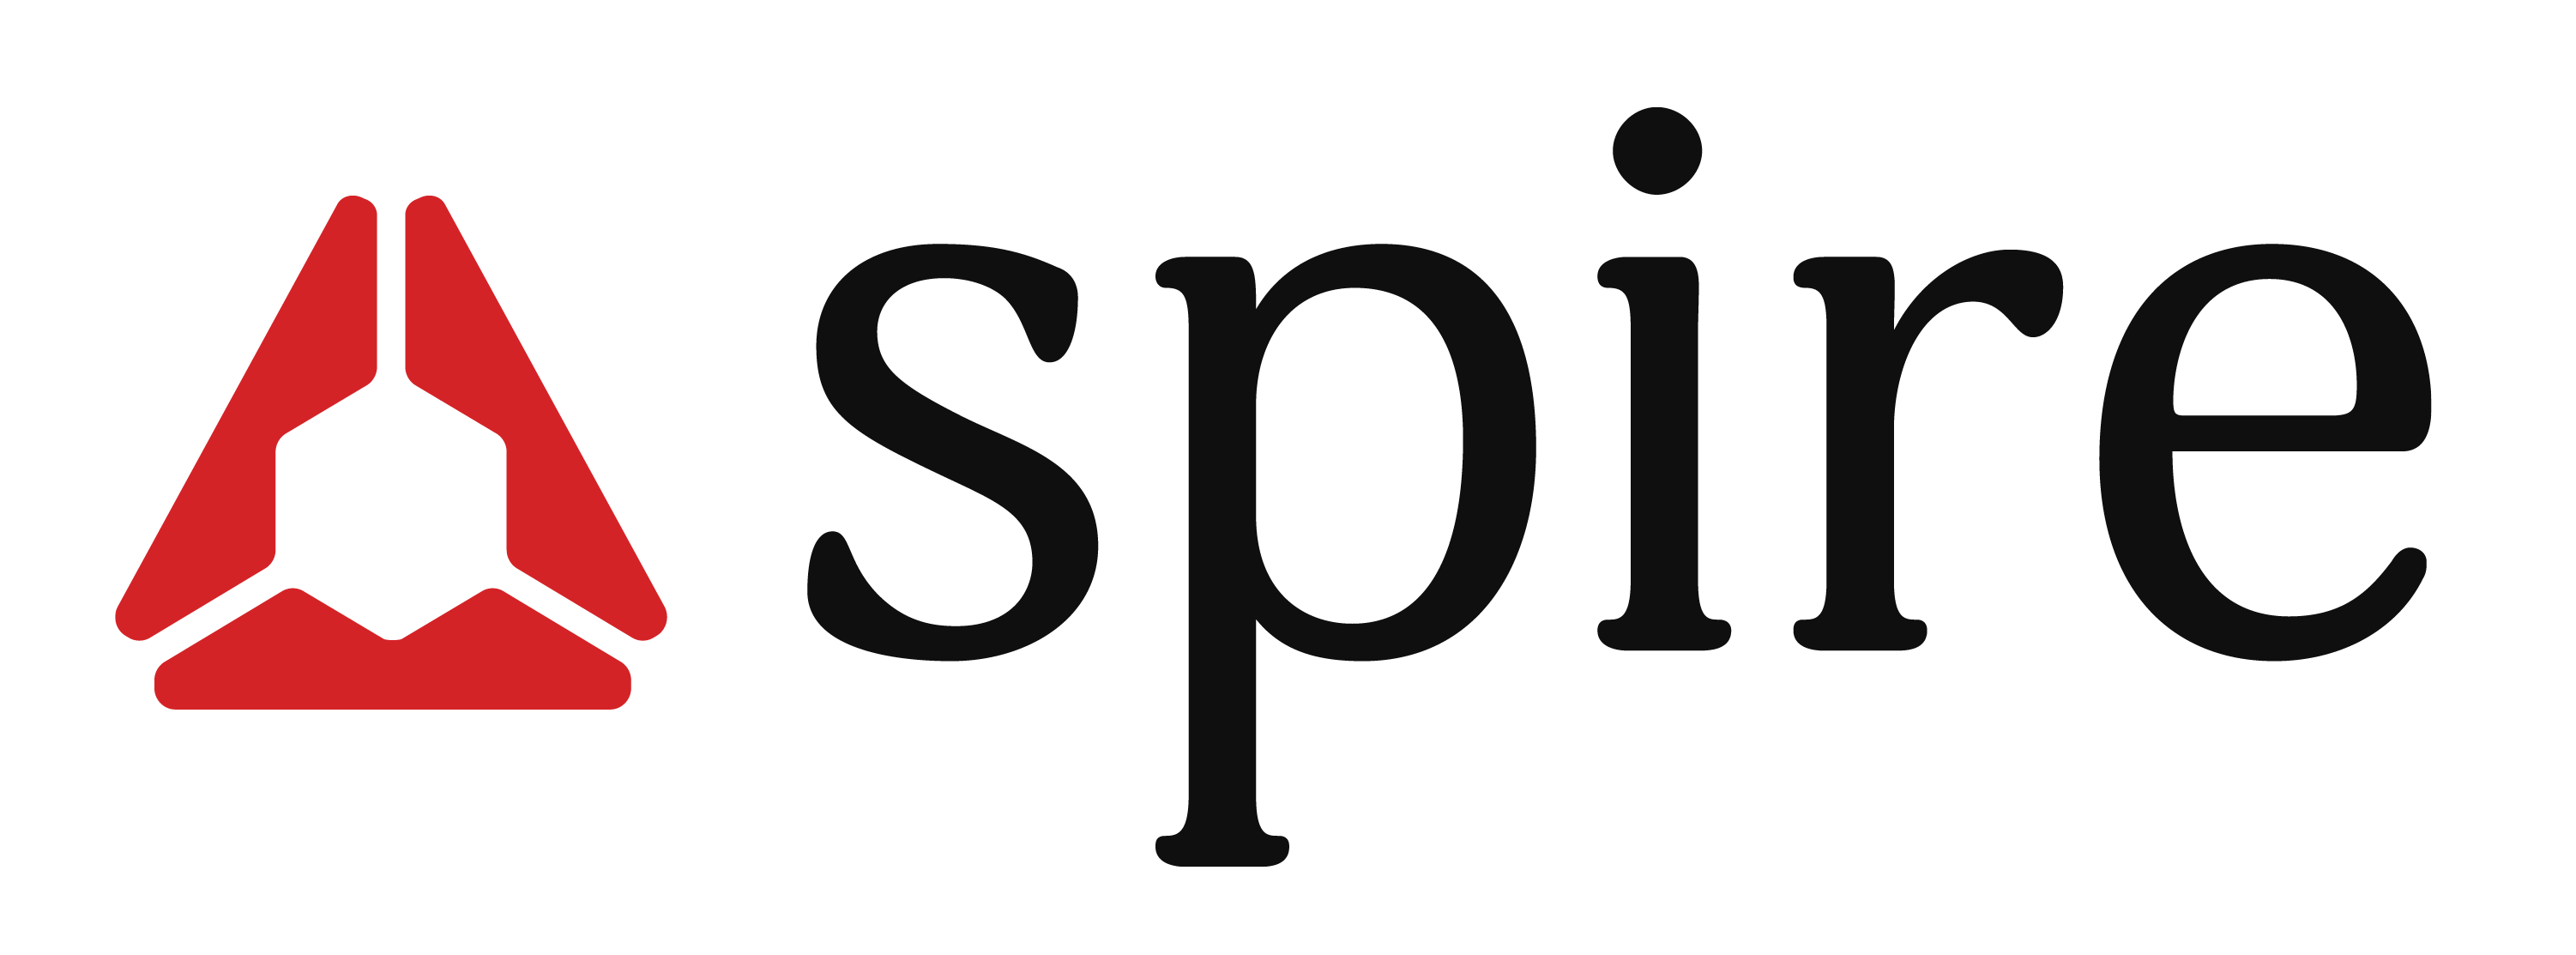 spire_logo_20190507_redblack_3003x1113.png